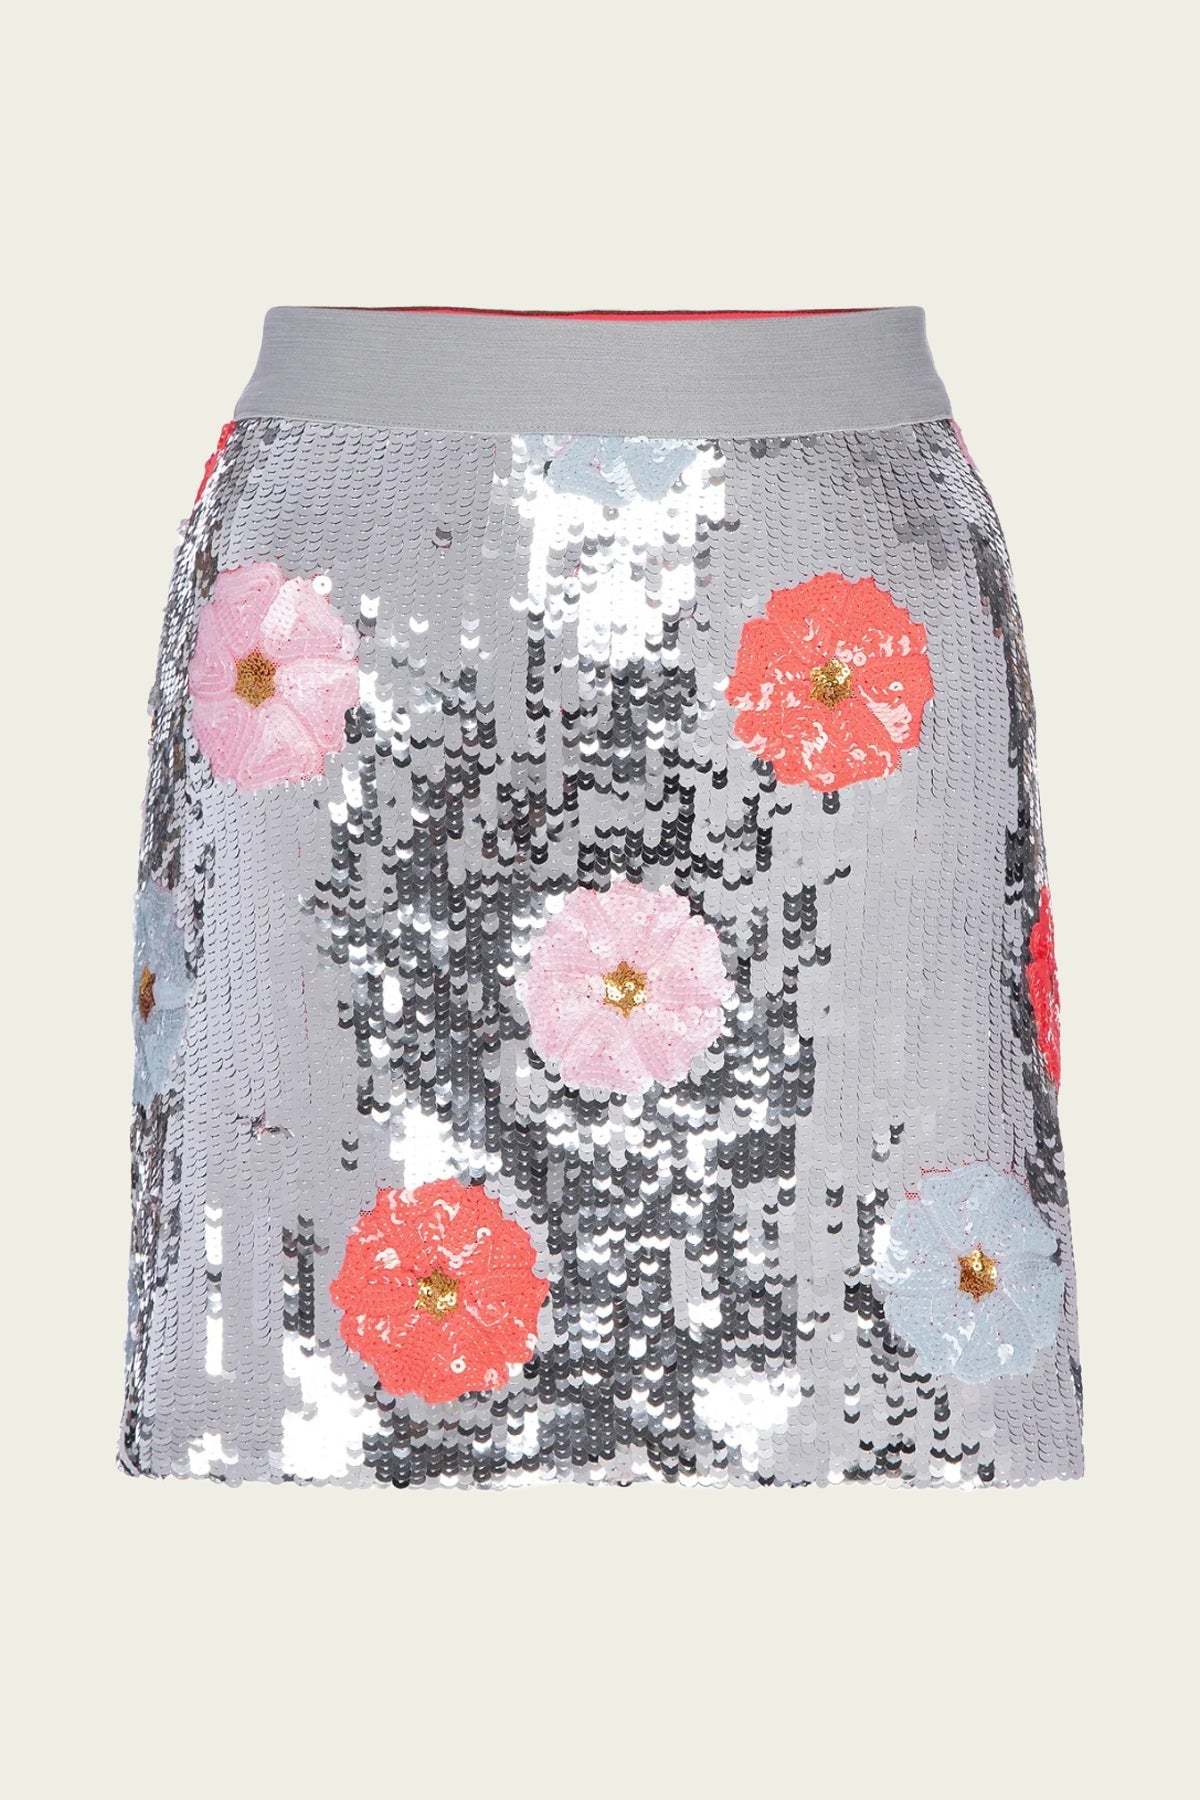 Acid Posey Garden Skirt - shop-olivia.com